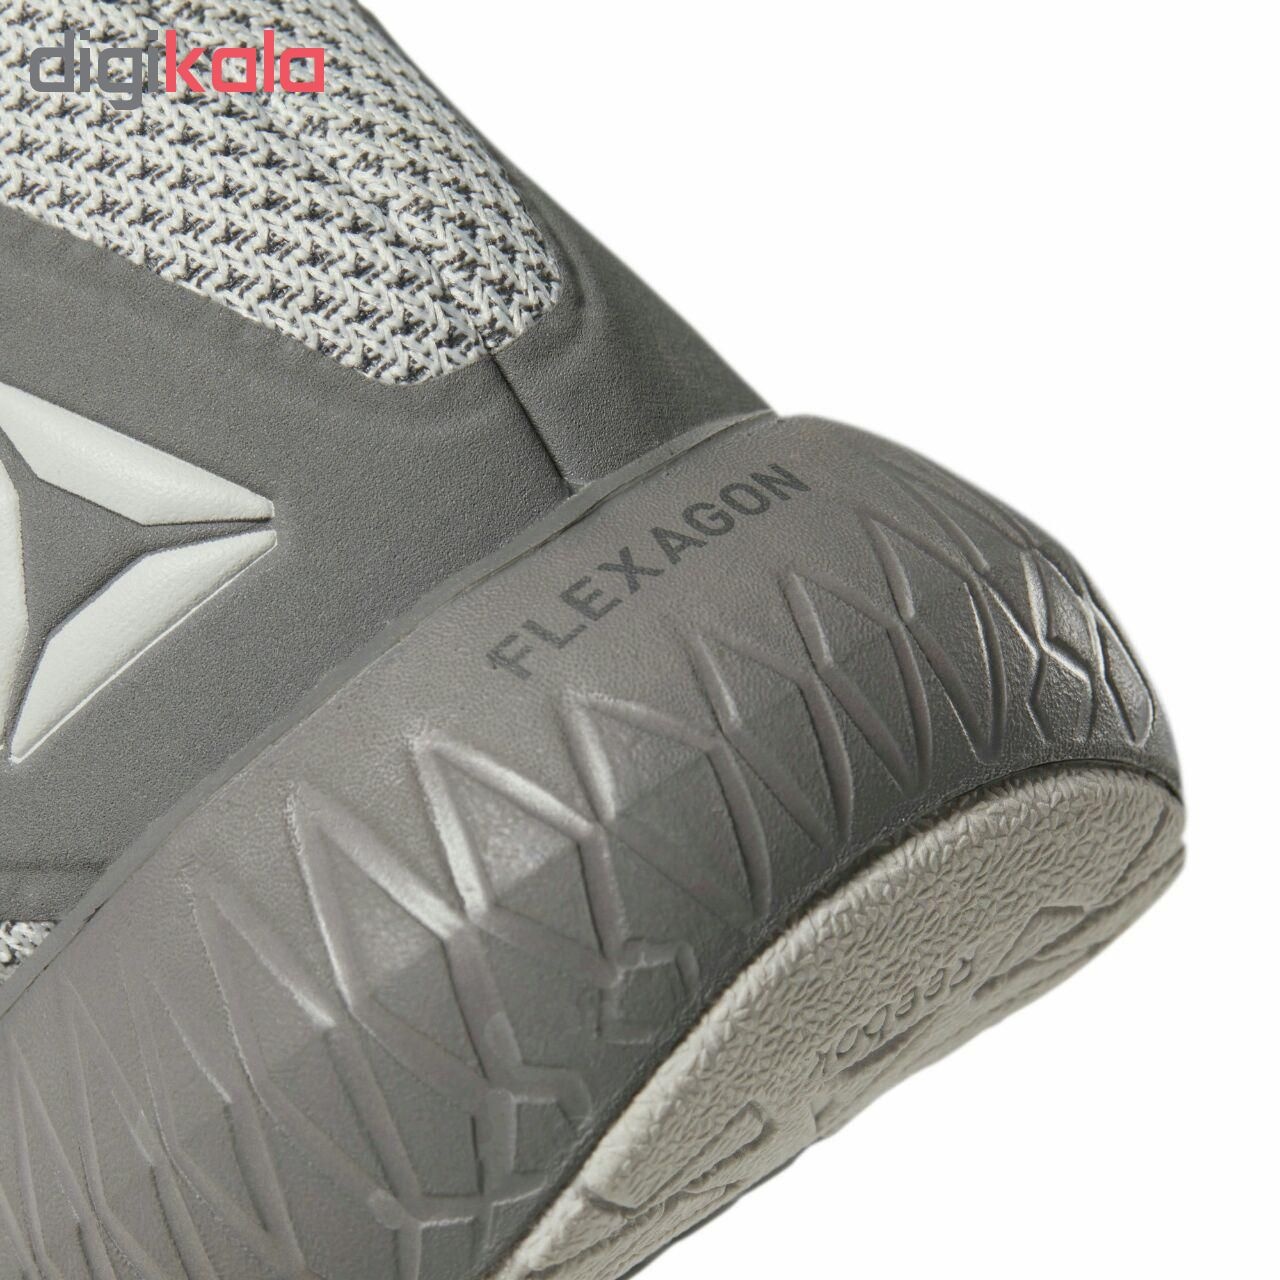 کفش مخصوص دویدن مردانه ریباک مدل Flexagon DV4130